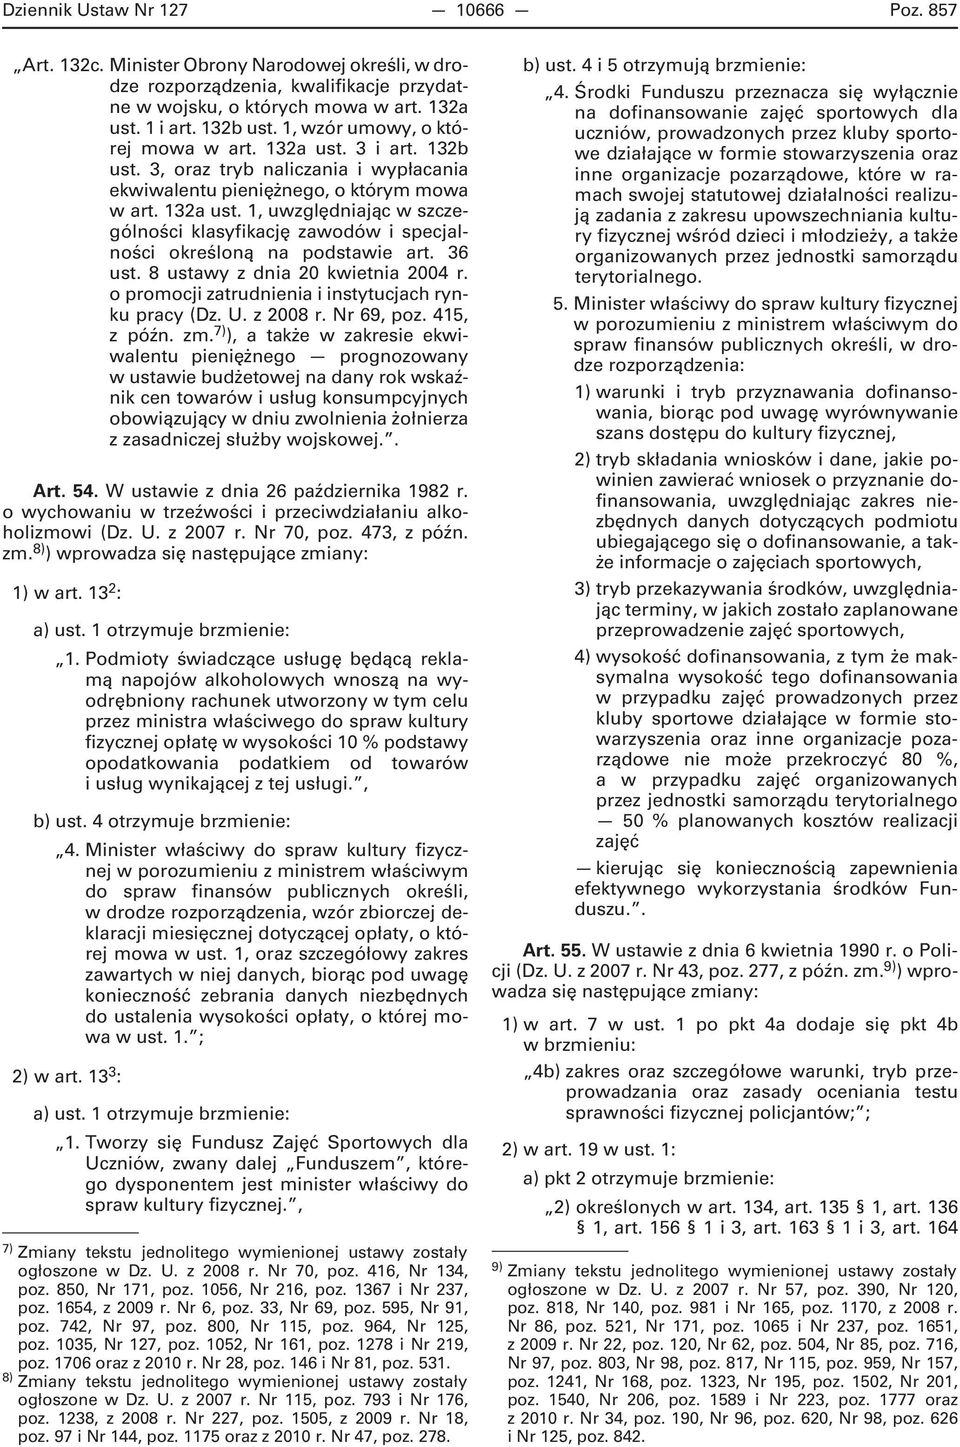 36 ust. 8 ustawy z dnia 20 kwietnia 2004 r. o promocji zatrudnienia i instytucjach rynku pracy (Dz. U. z 2008 r. Nr 69, poz. 415, z późn. zm.